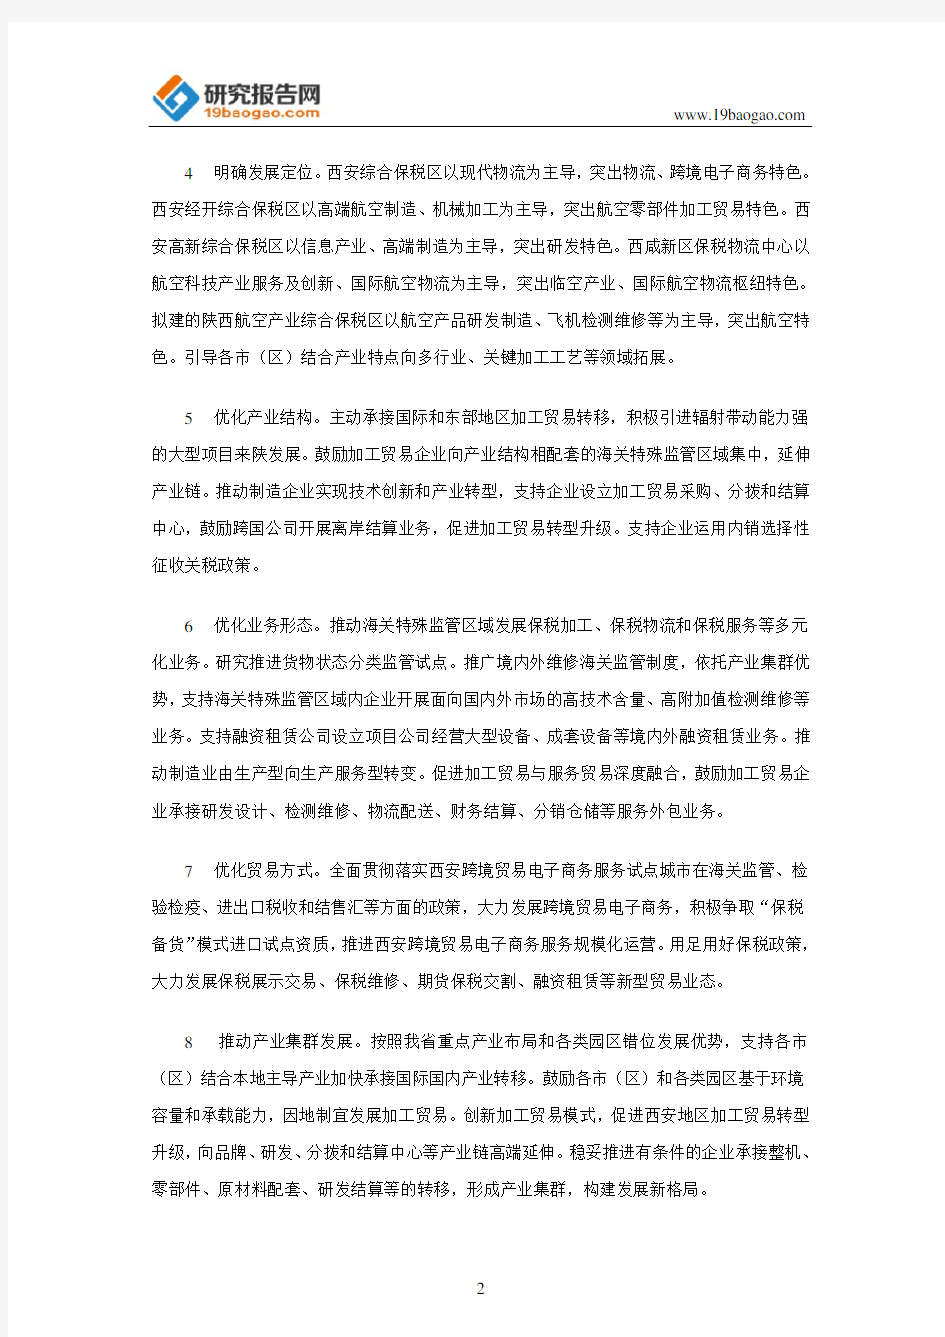 陕西省人民政府办公厅关于促进加工贸易创新发展的实施意见